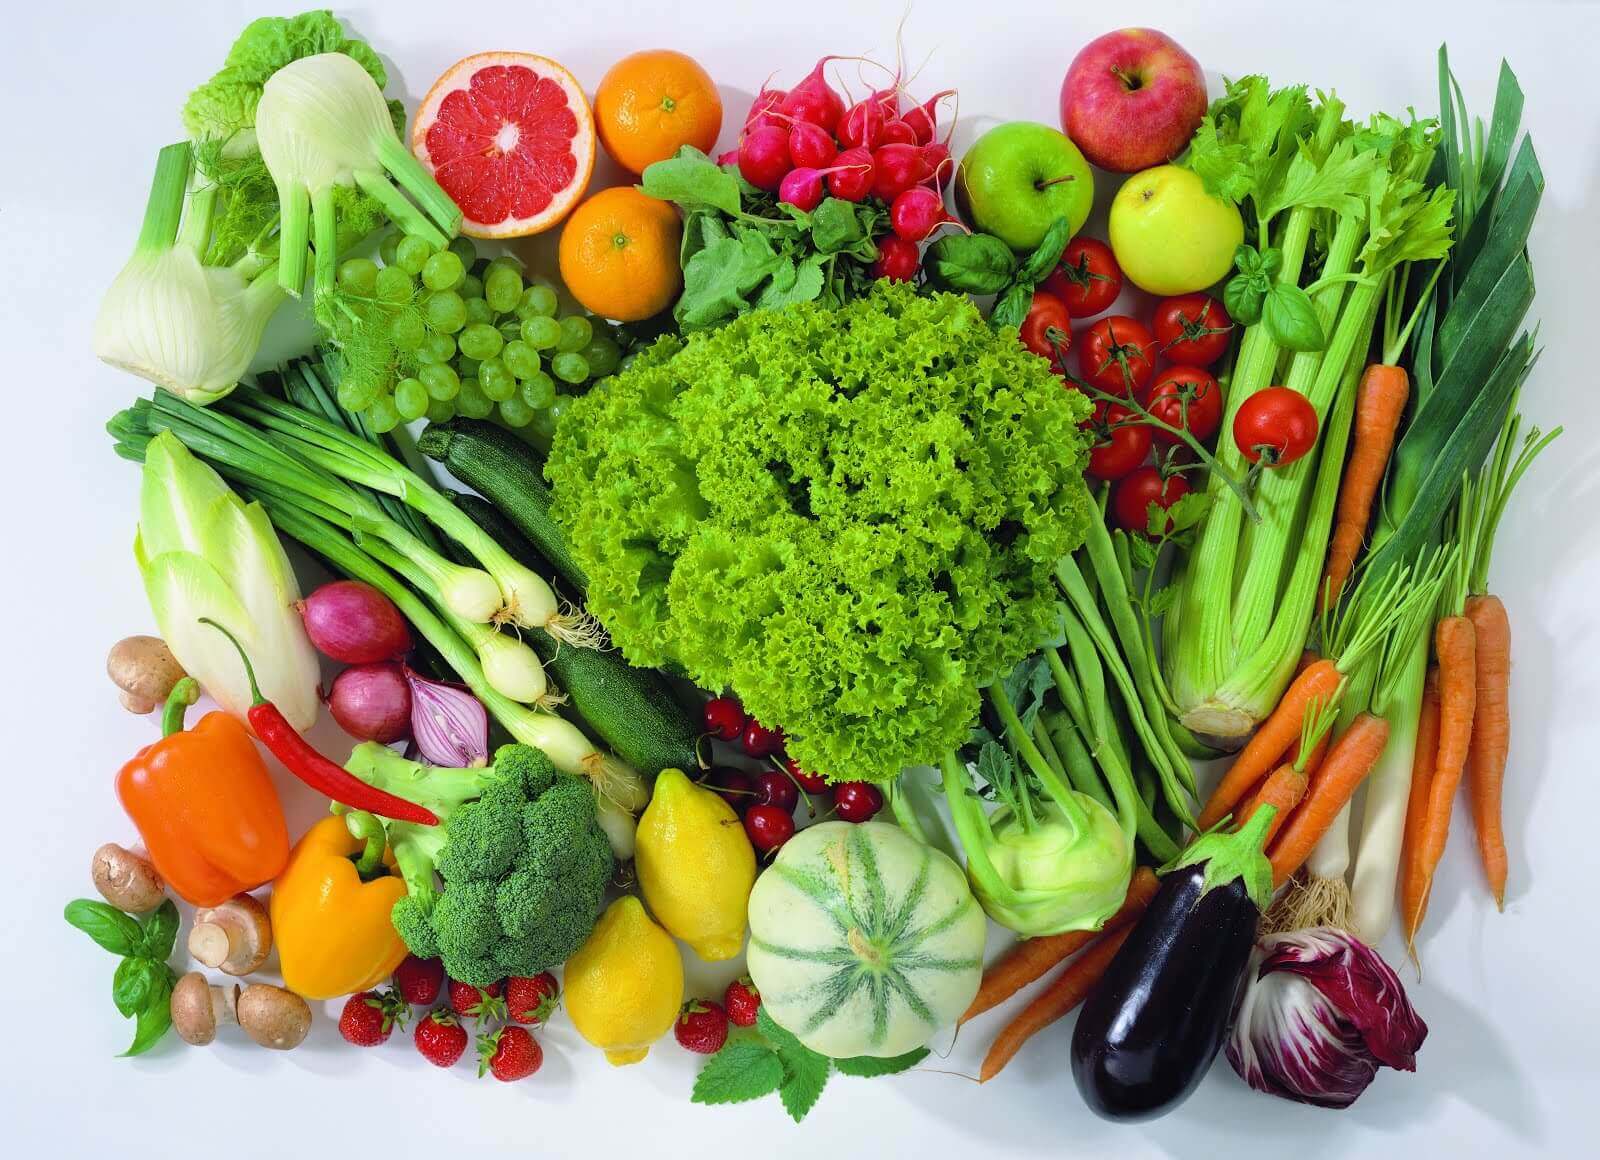 Legg til flere grønnsaker til måltidene dine